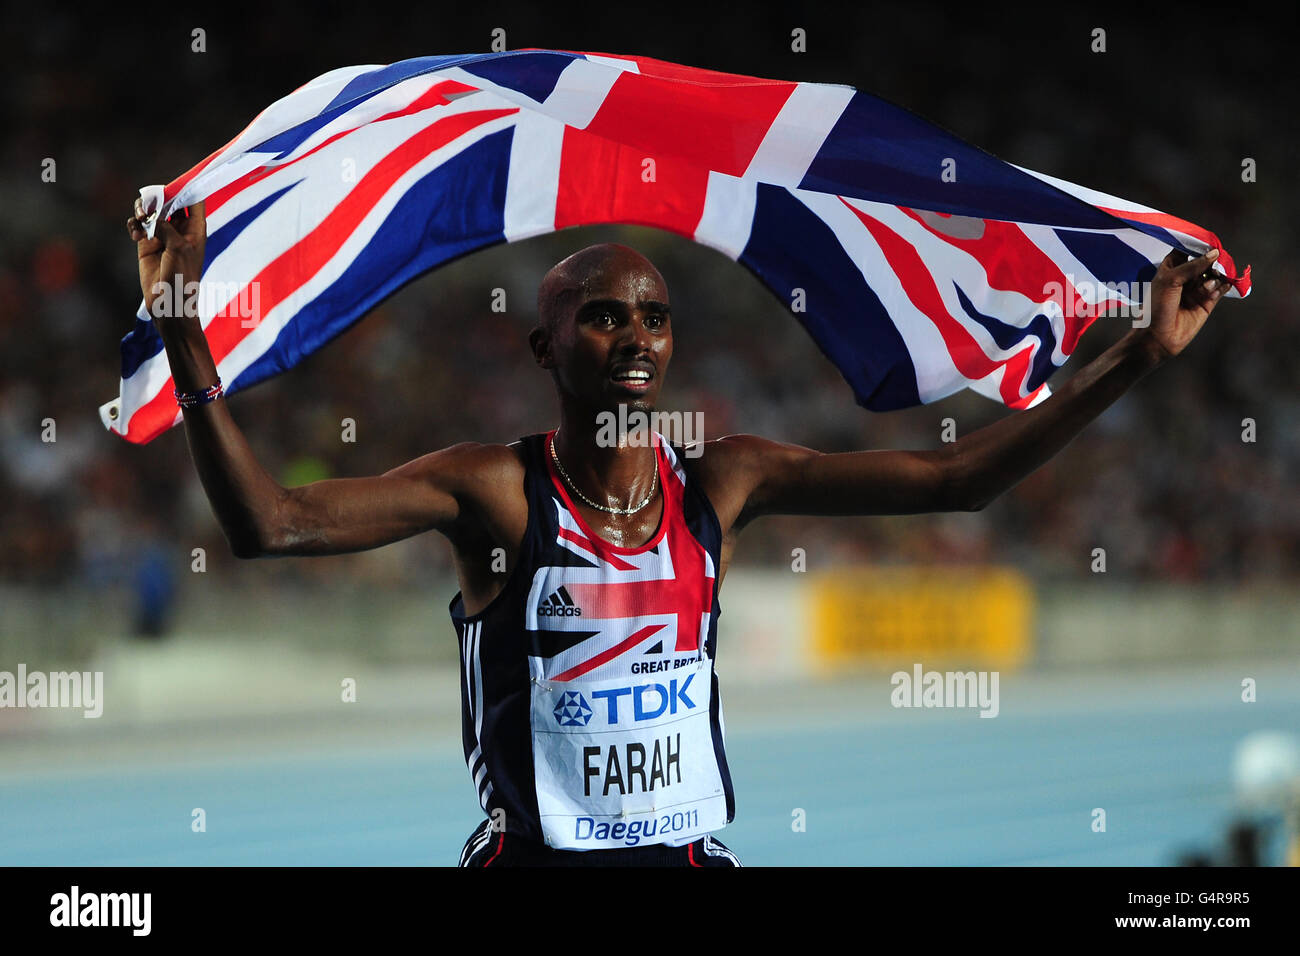 Athlétisme - Championnats du monde IAAF 2011 - neuvième jour - Daegu.Mo Farah, en Grande-Bretagne, célèbre la victoire de la finale masculine de 5000m Banque D'Images